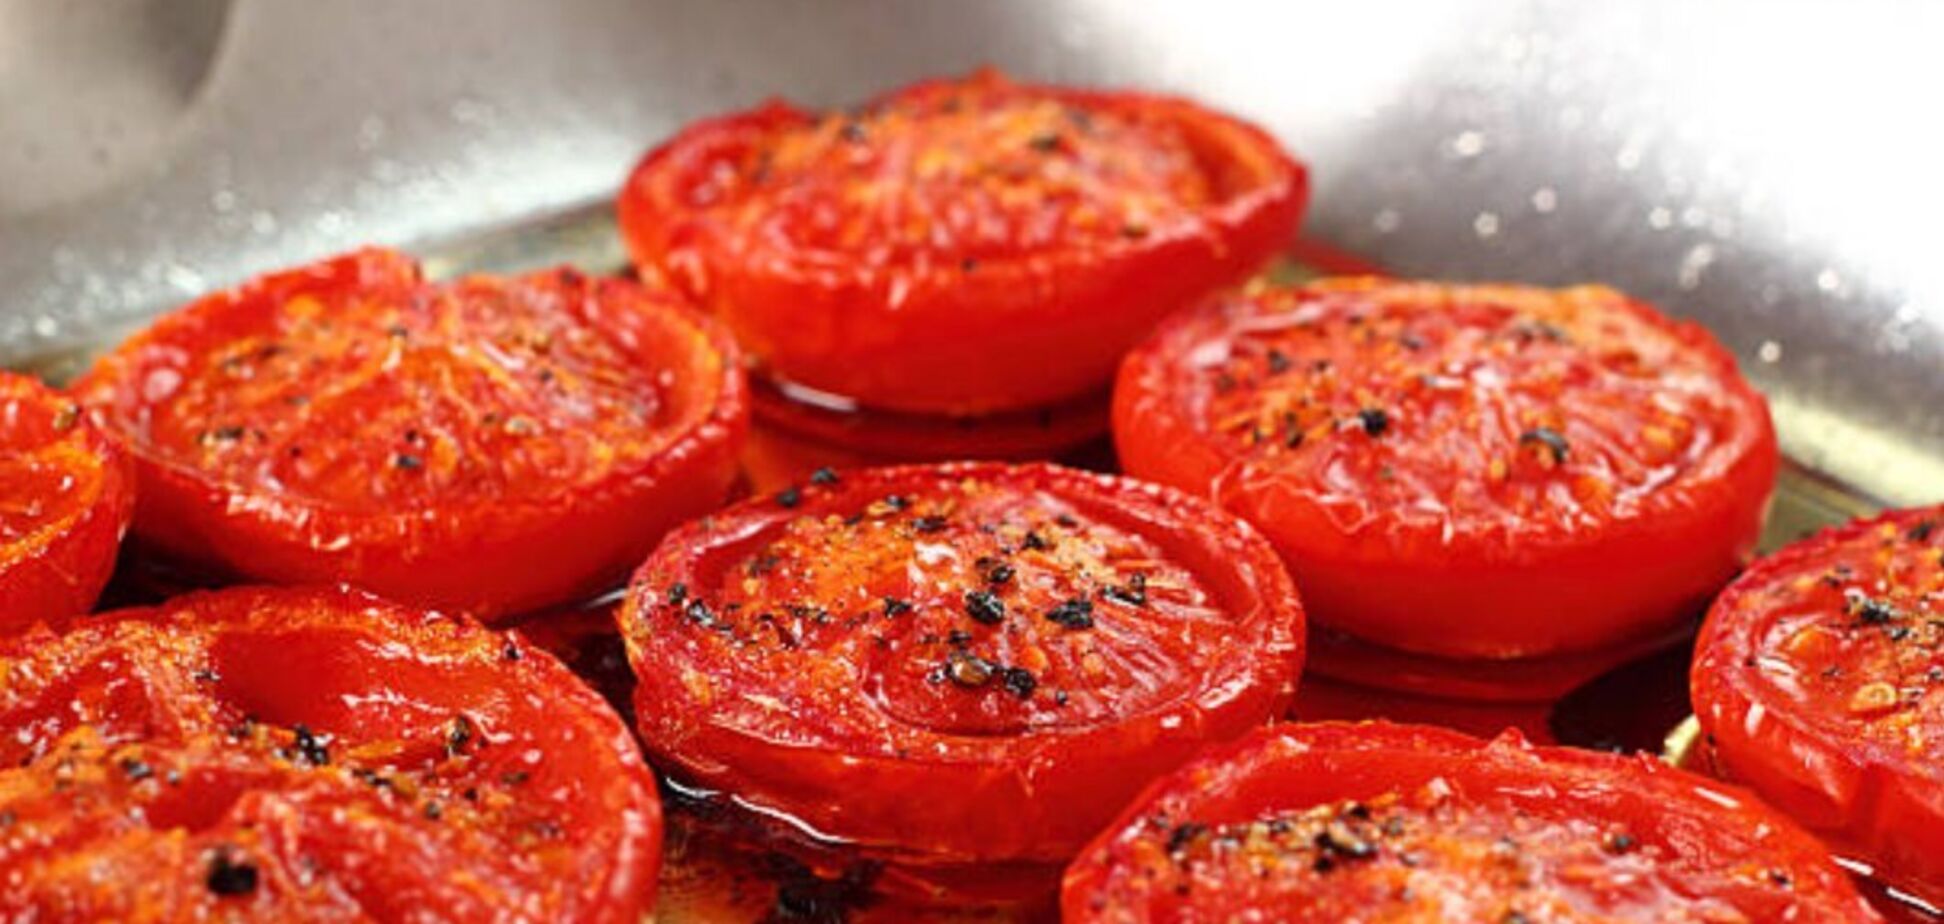 Как запечь помидоры в духовке: бюджетная закуска за 10 минут